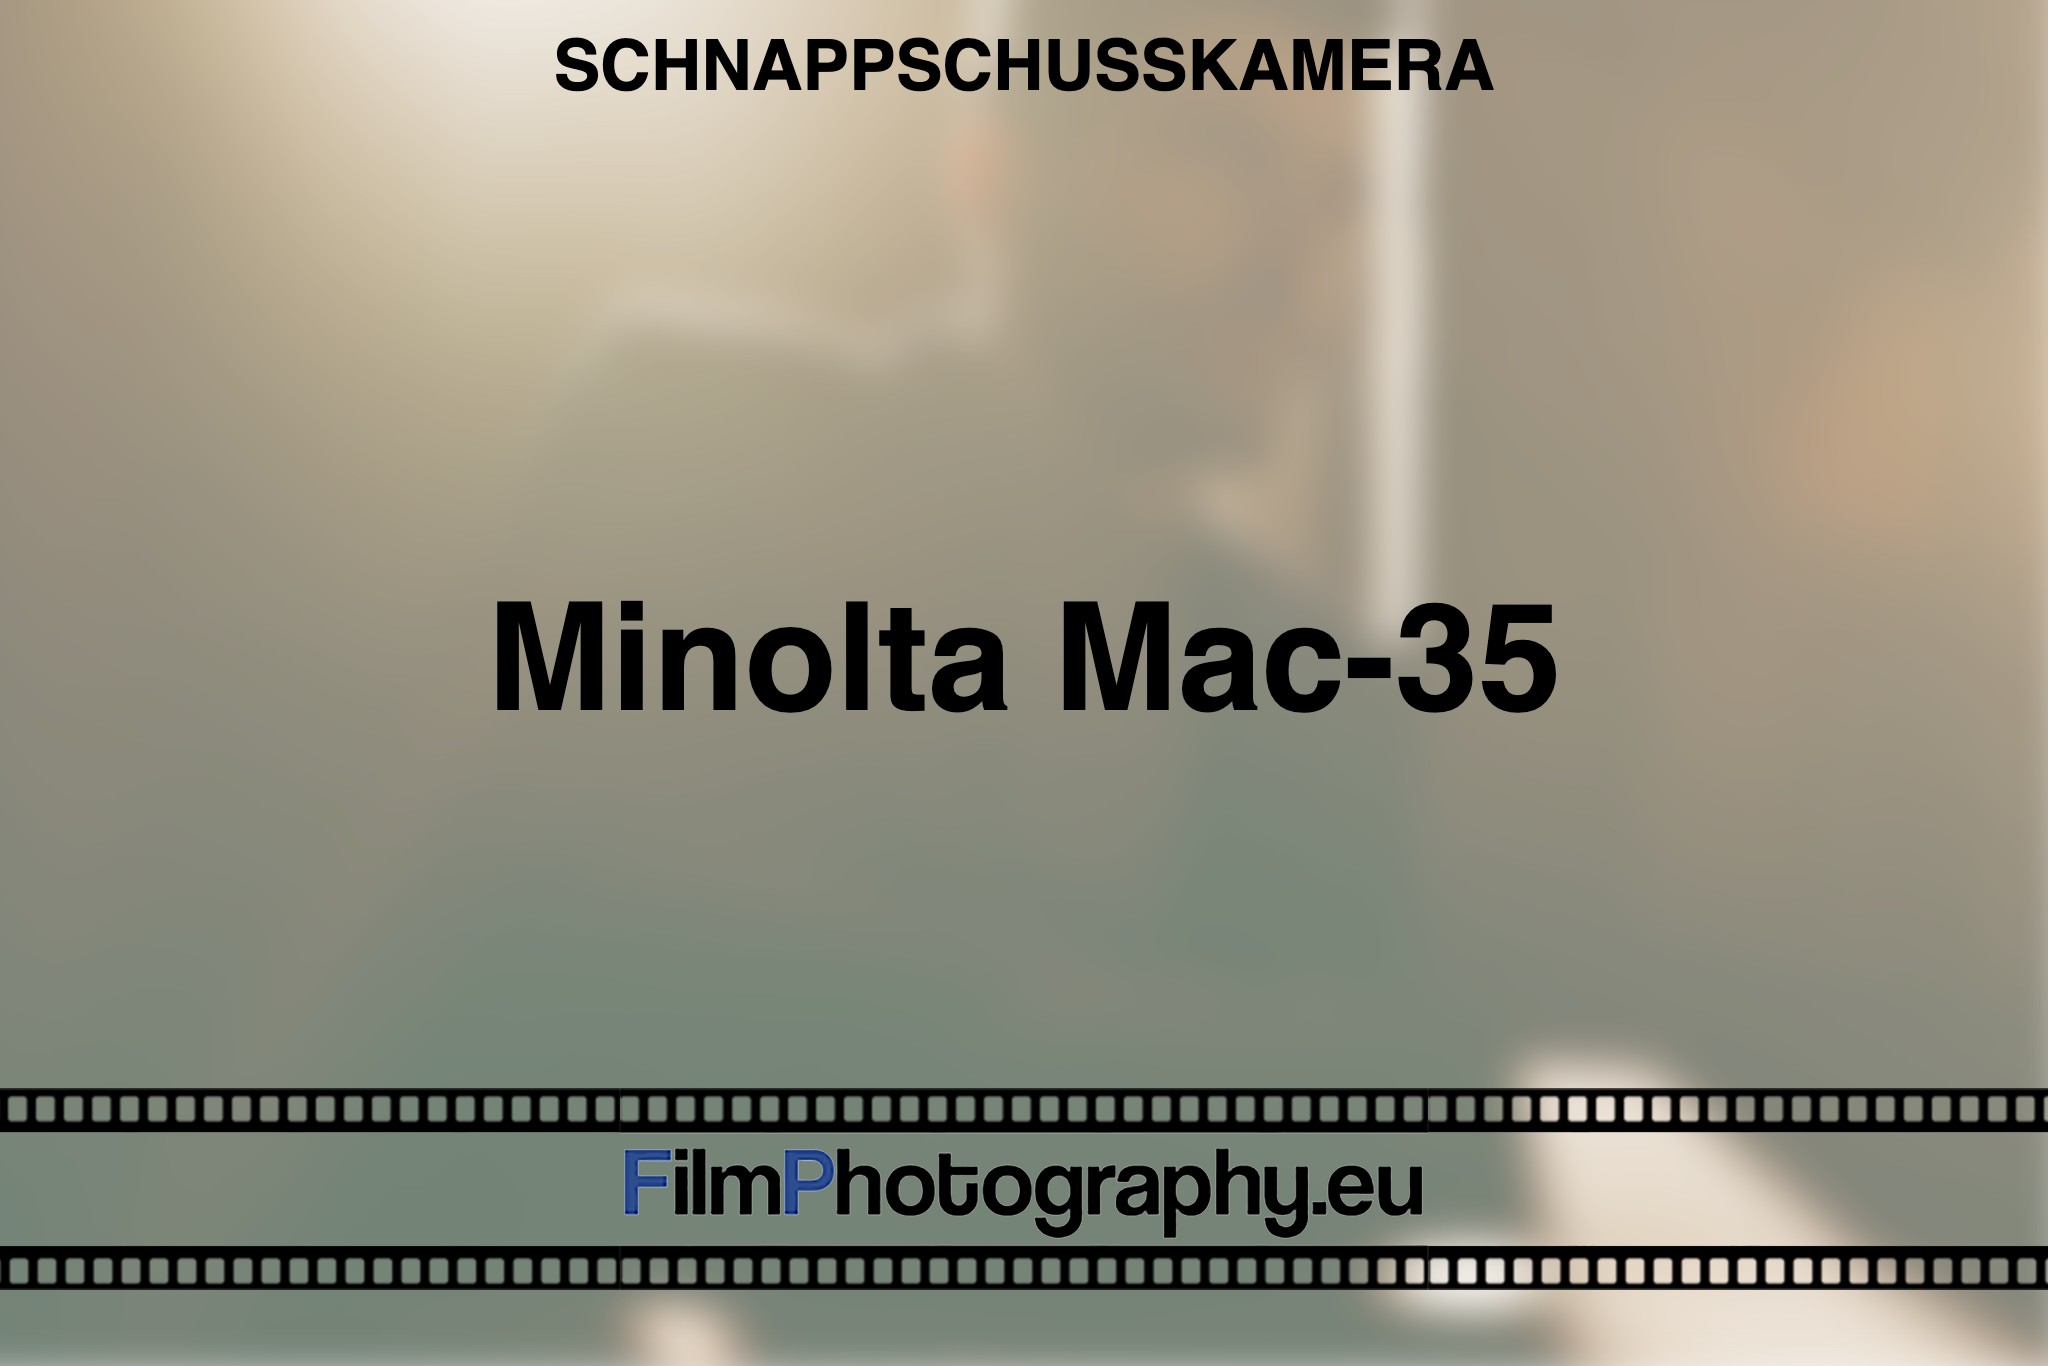 minolta-mac-35-schnappschusskamera-bnv